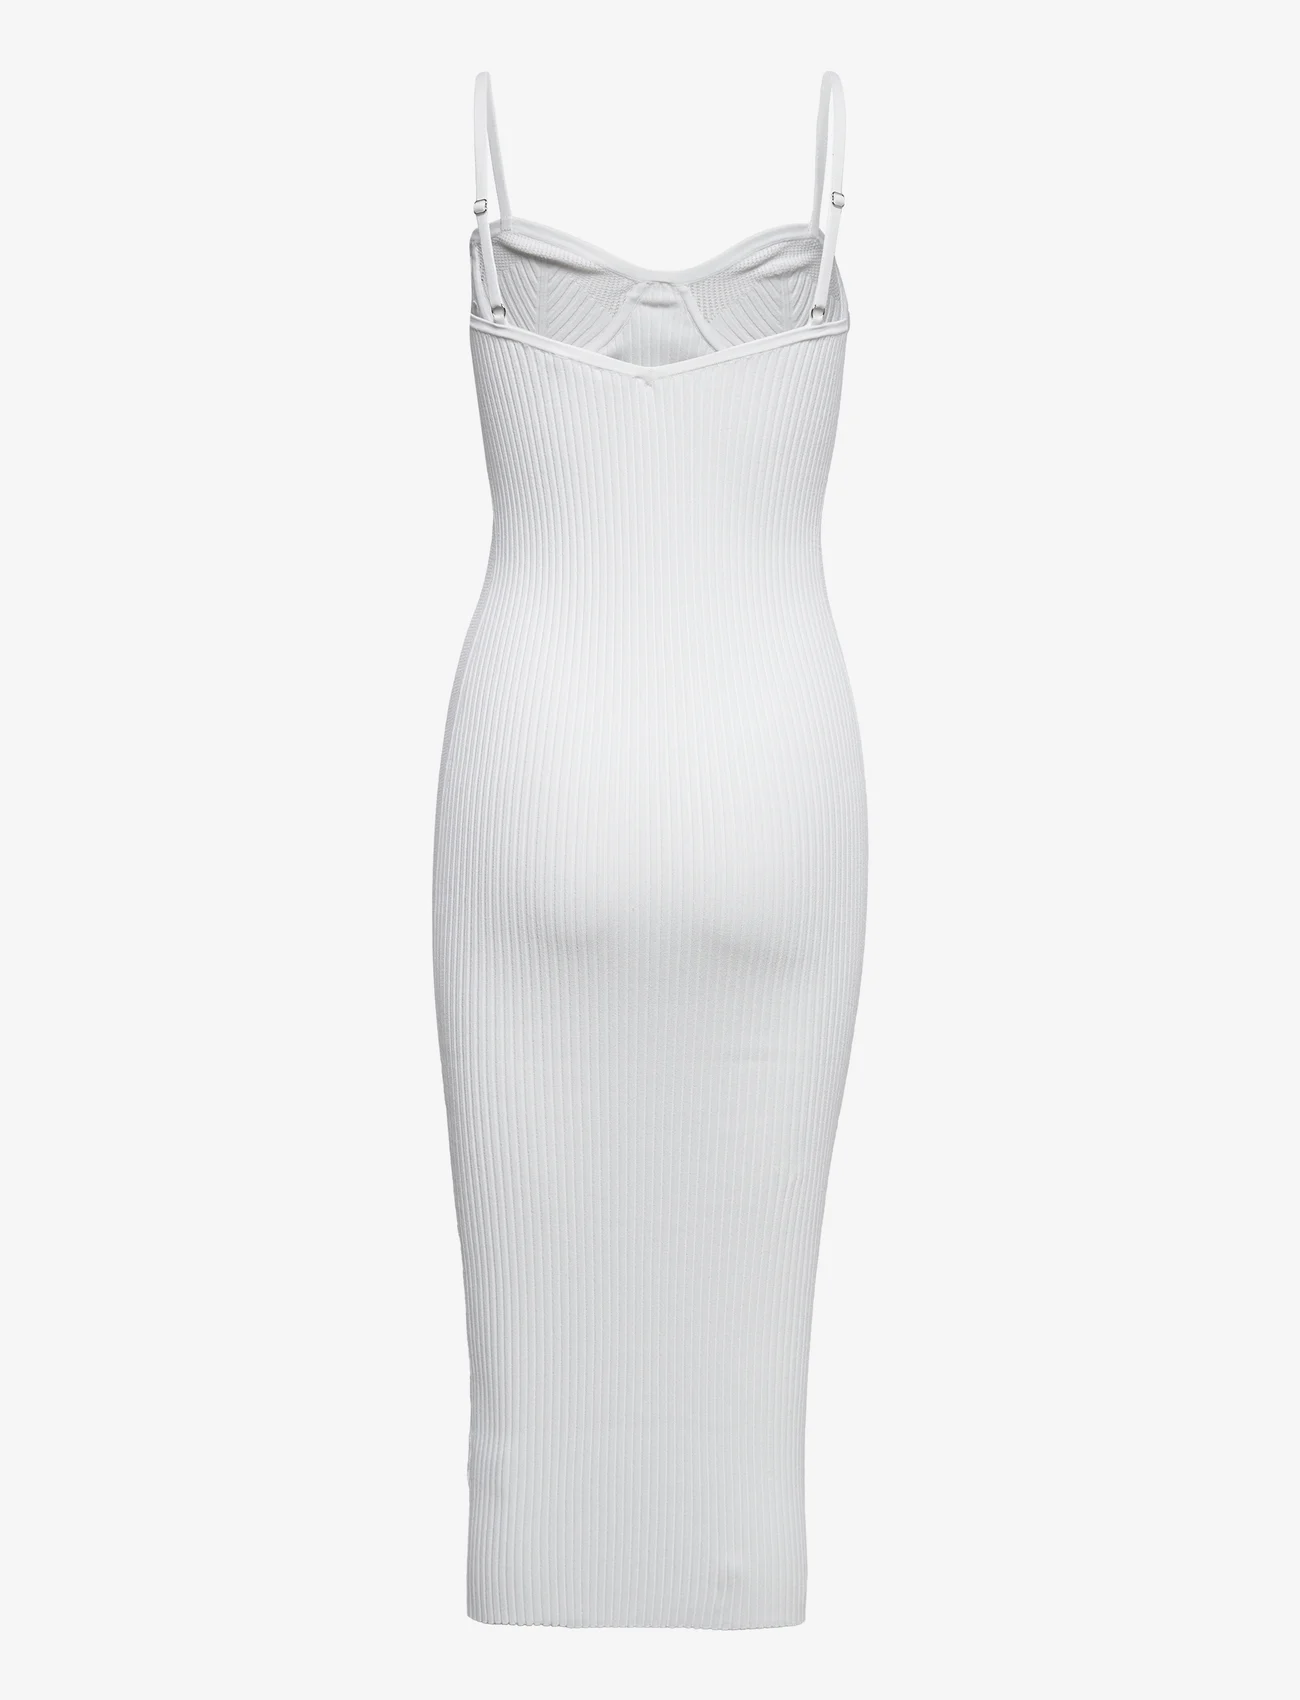 Helmut Lang - EYELET BRA DRESS.WAR - etuikleider - white/white - 1